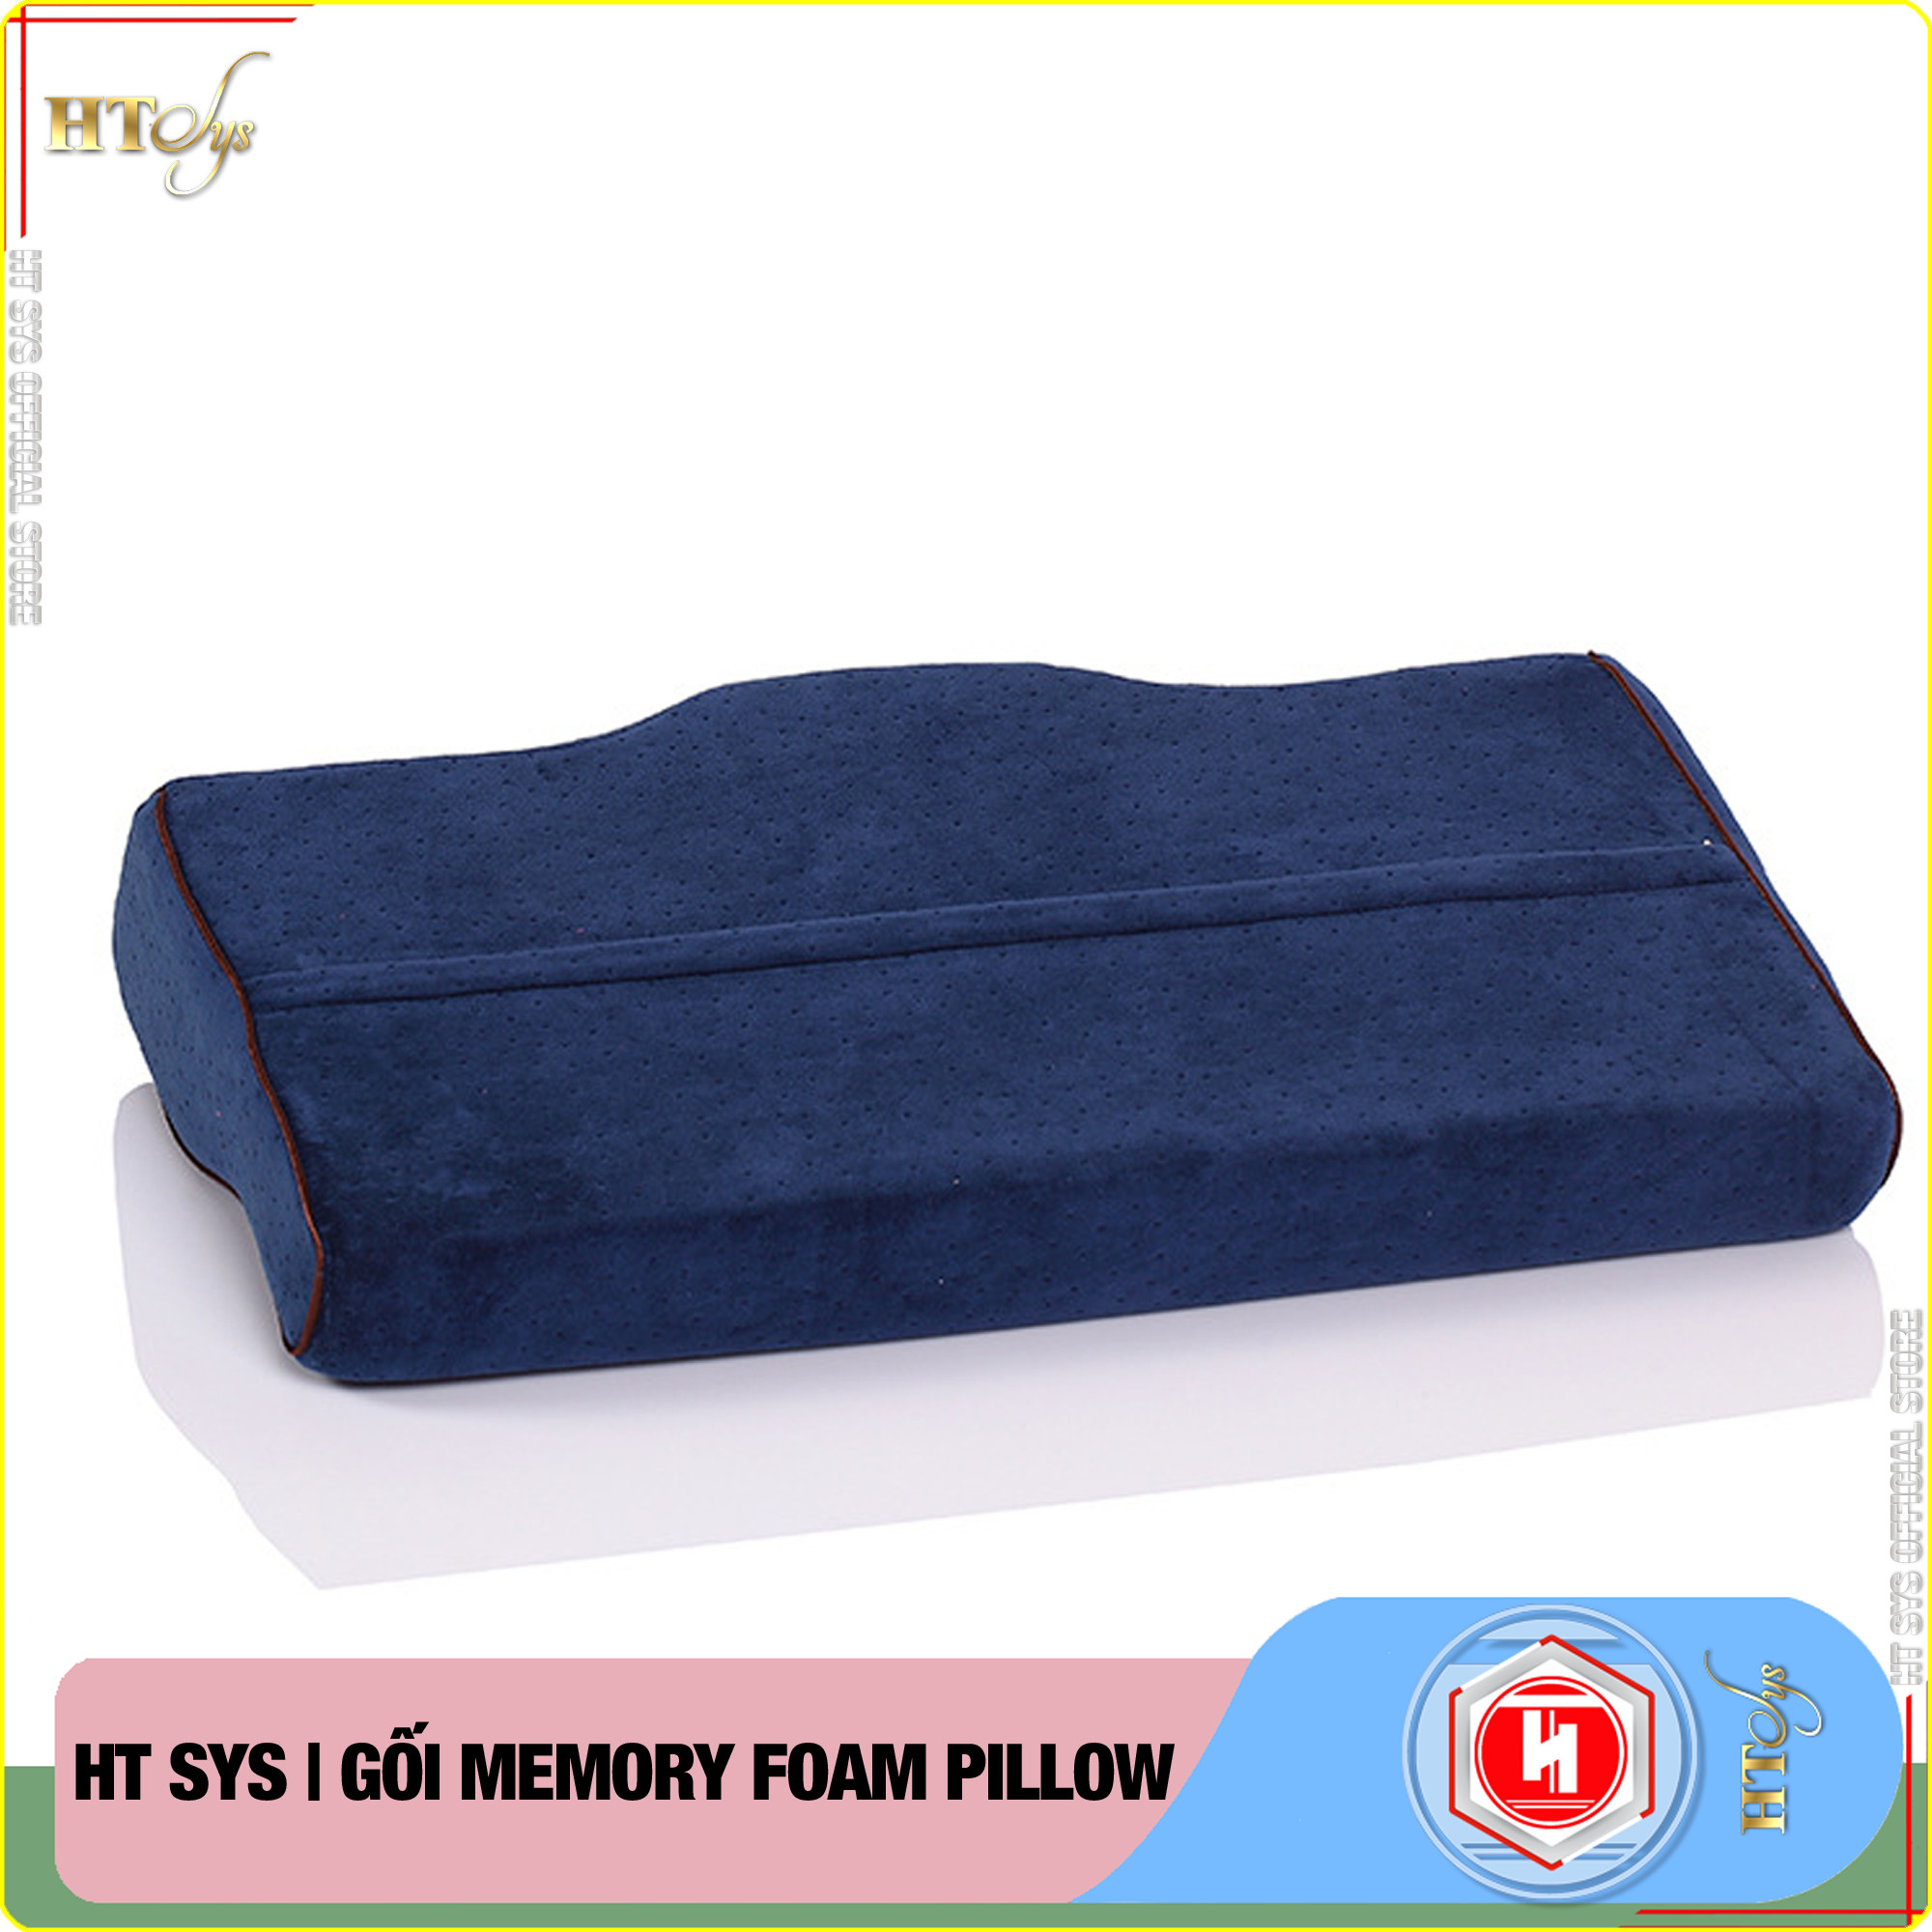 Gối cao su non Memory Foam Pillow công nghệ Nhật Bản -HT SYS- Giúp Ngủ Nhanh - Chống thoái hoá đốt sống cổ - [ Hàng Nhập Khẩu ]